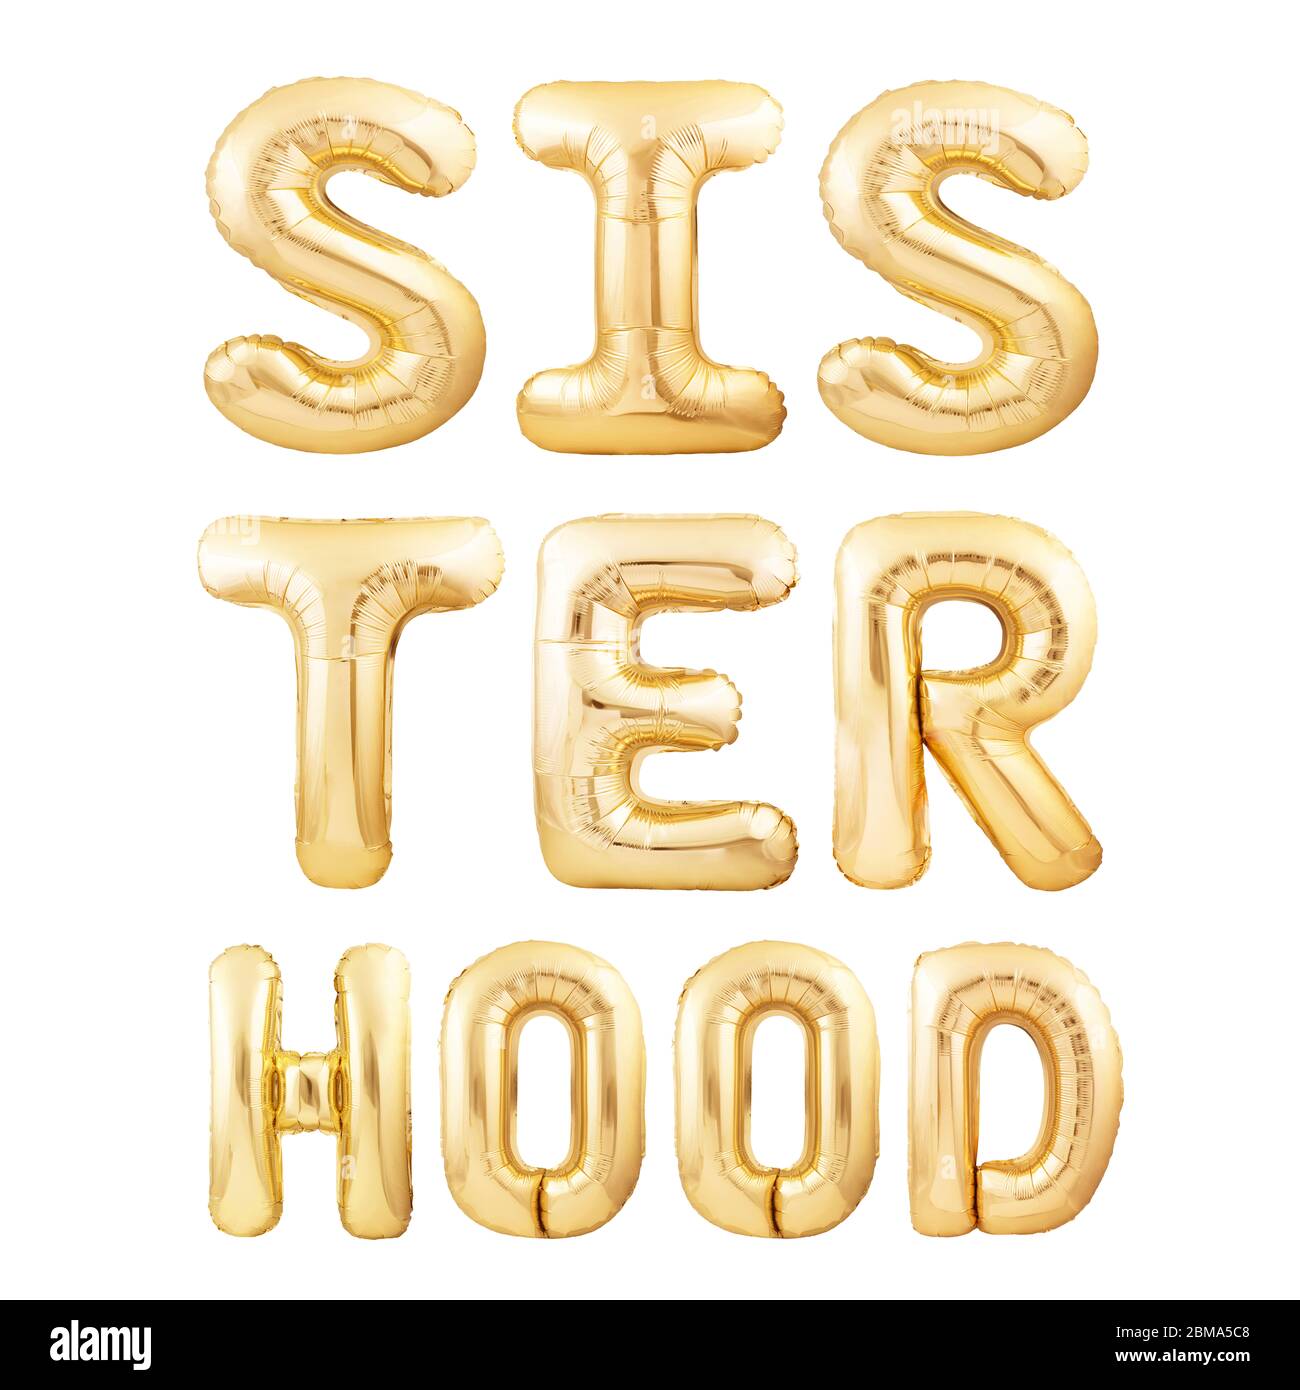 Texte « Sister Hood » en lettres de ballons gonflables dorés isolées sur fond blanc. Citation d'activisme ou de féminisme Banque D'Images